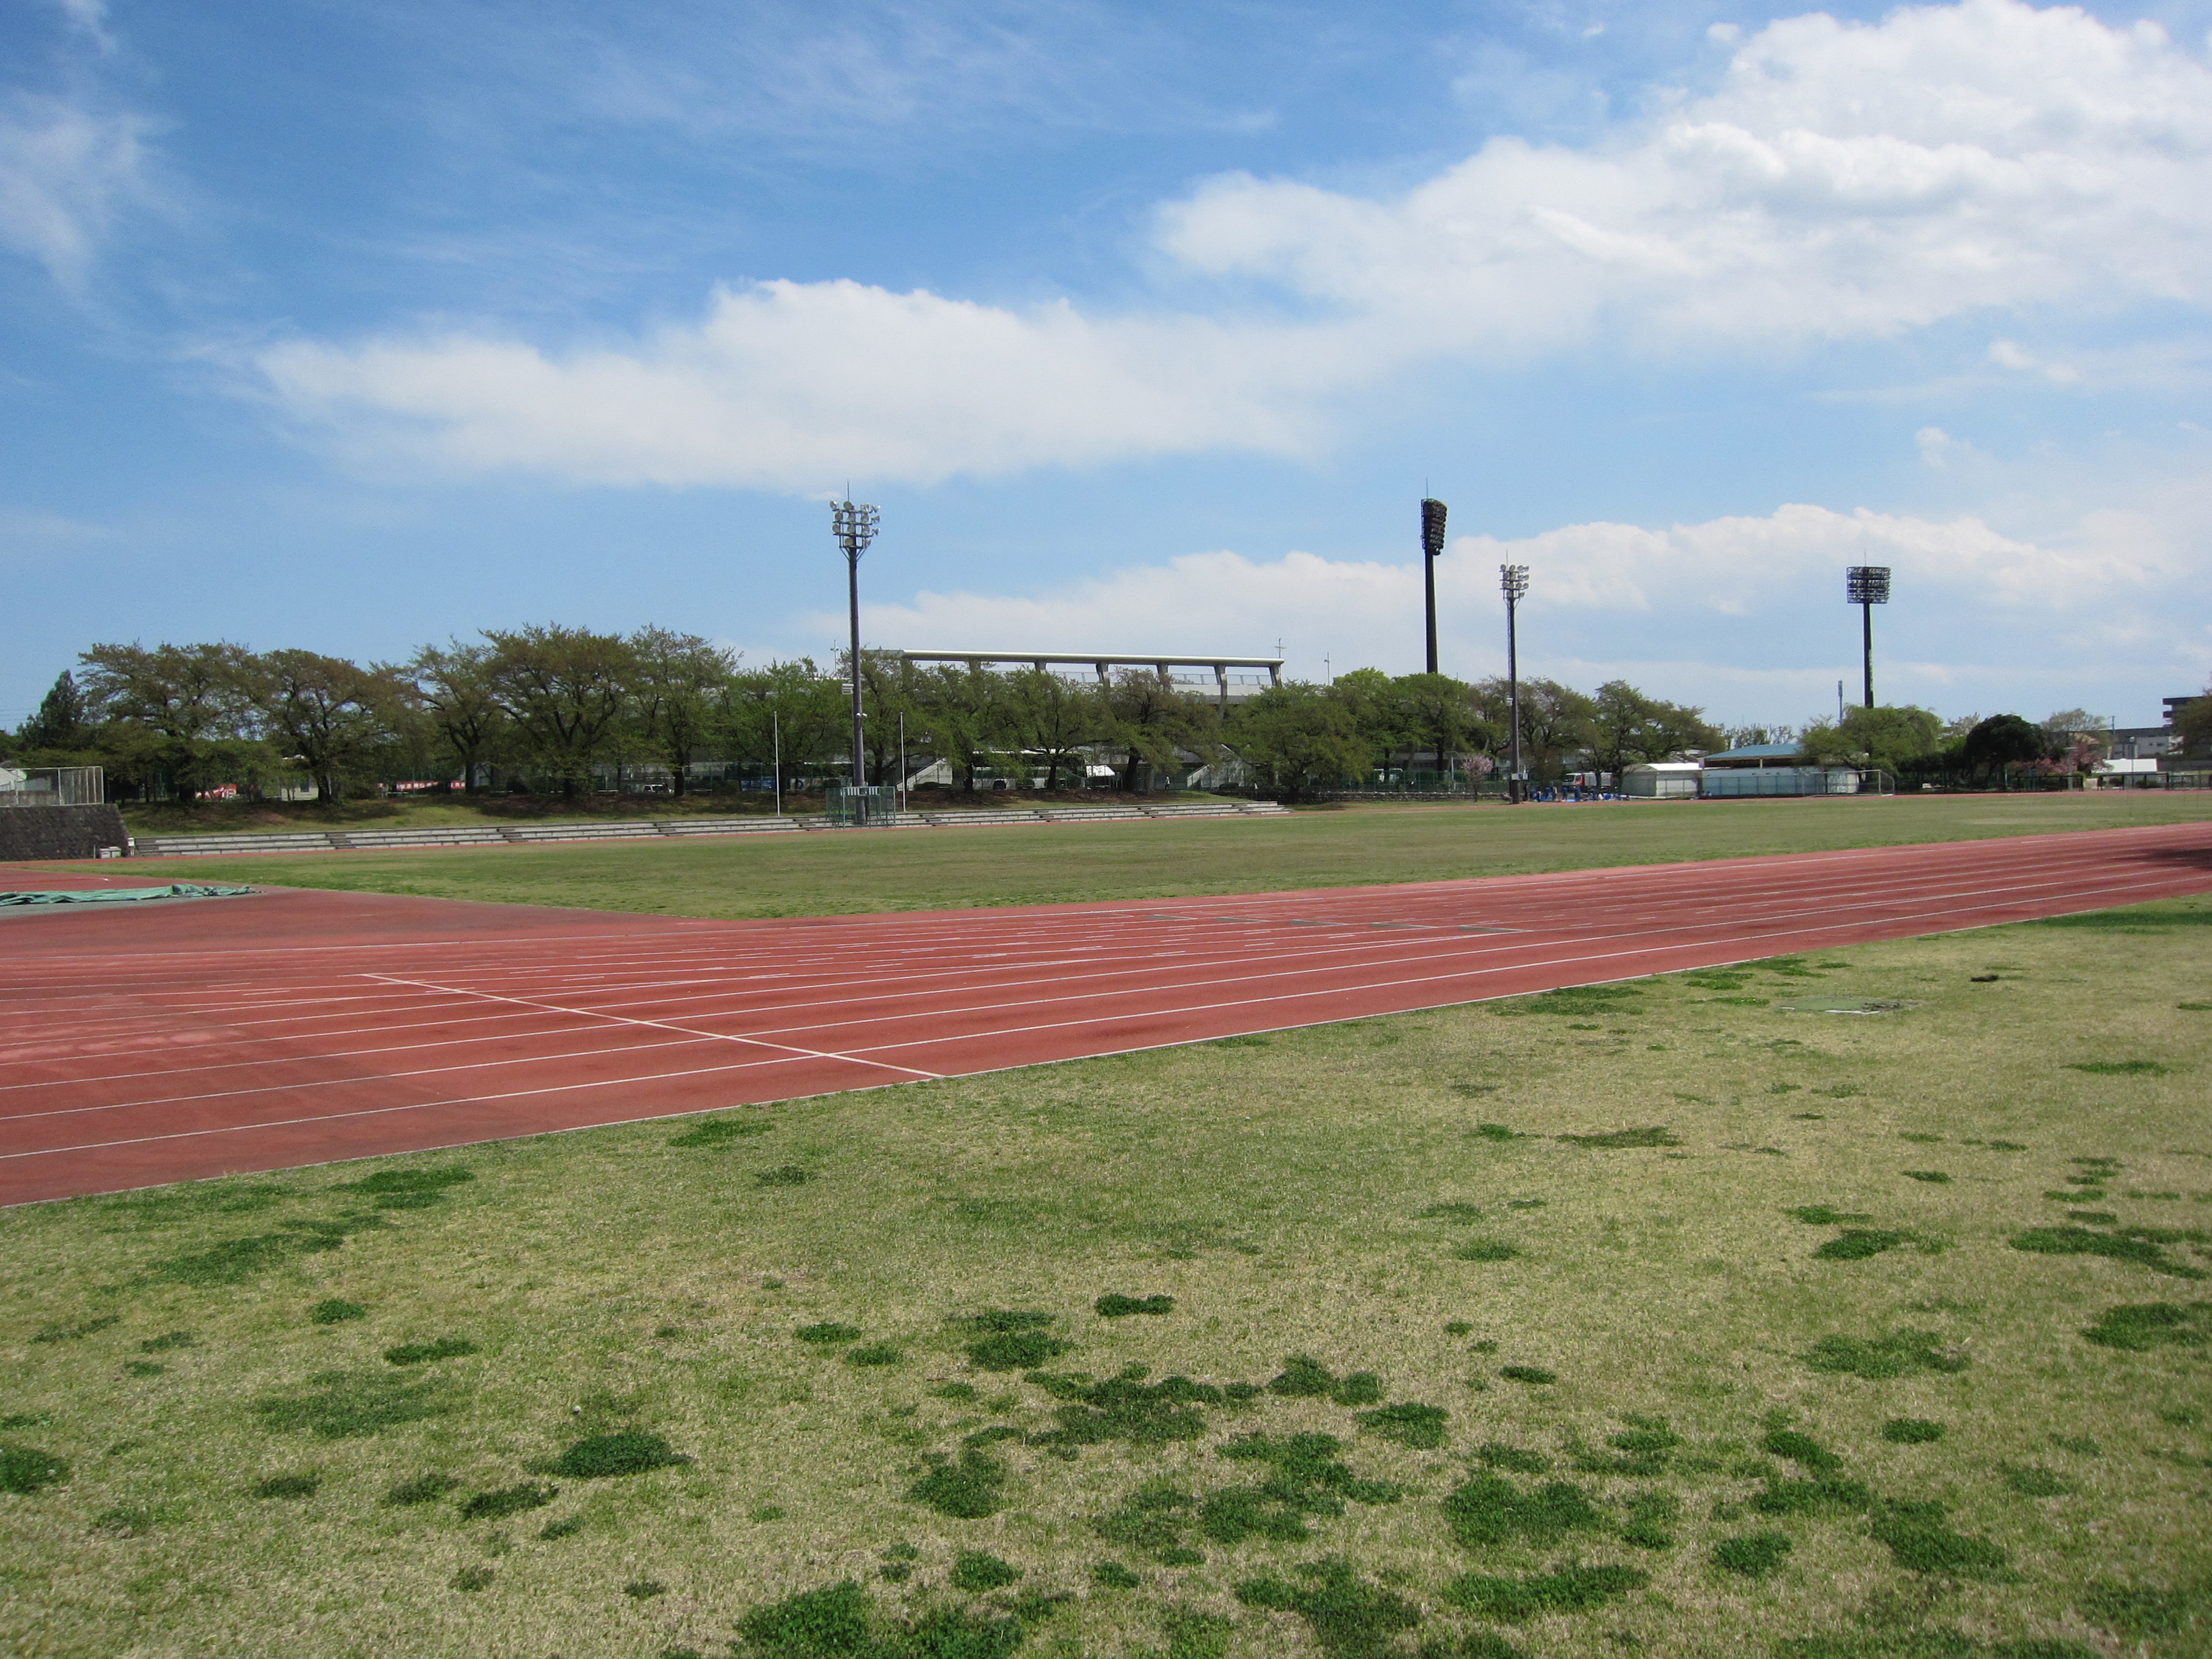 群馬県立敷島公園補助陸上競技場 Wikipedia